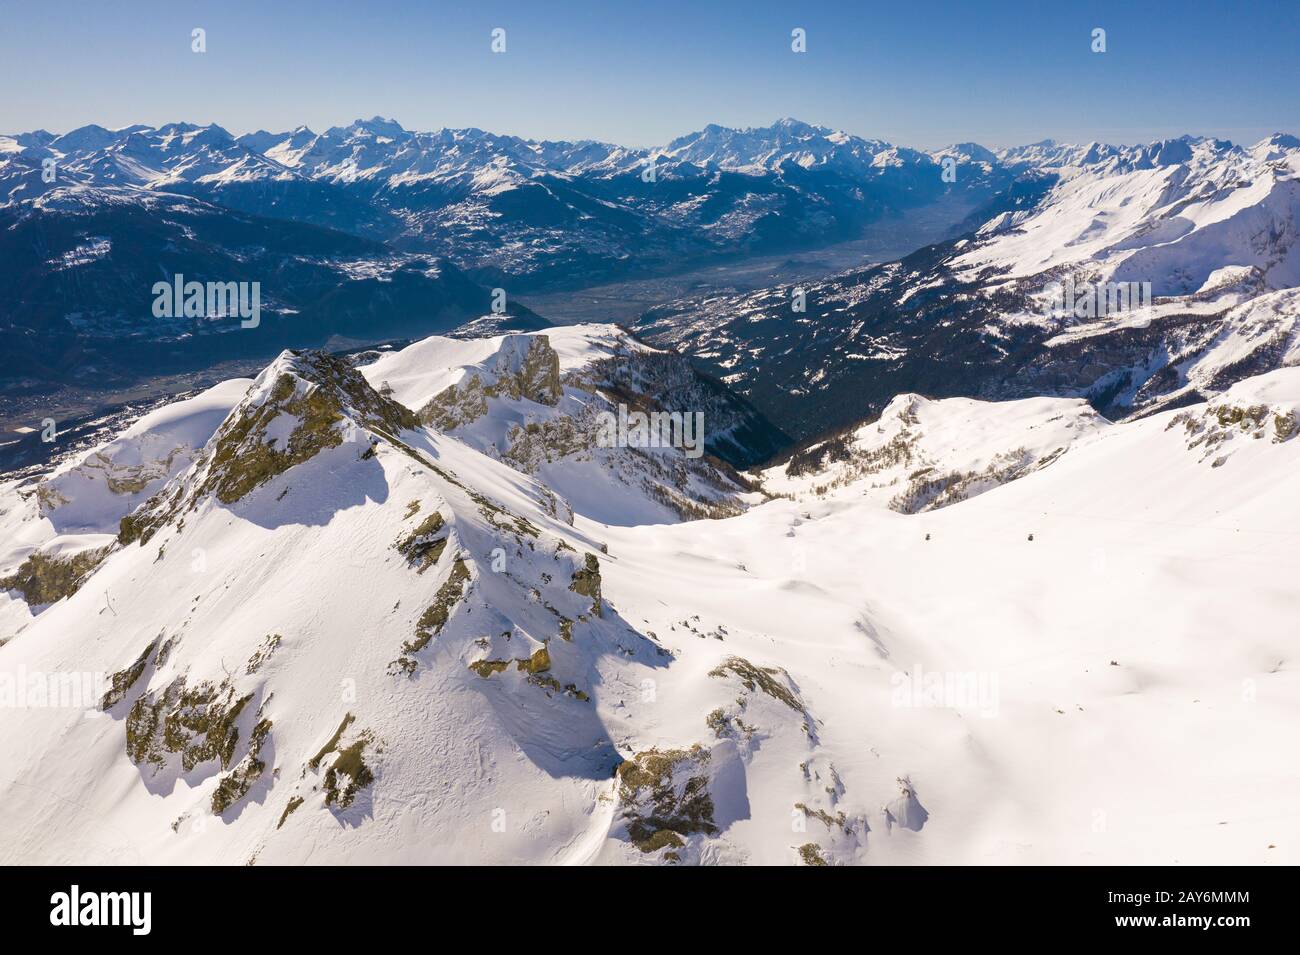 Vue aérienne du glacier de la Plaine Morte au sommet de la station de ski  de Crans Montana avec vue sur la vallée centrale du Valais dans les alpes  suisses en Suisse